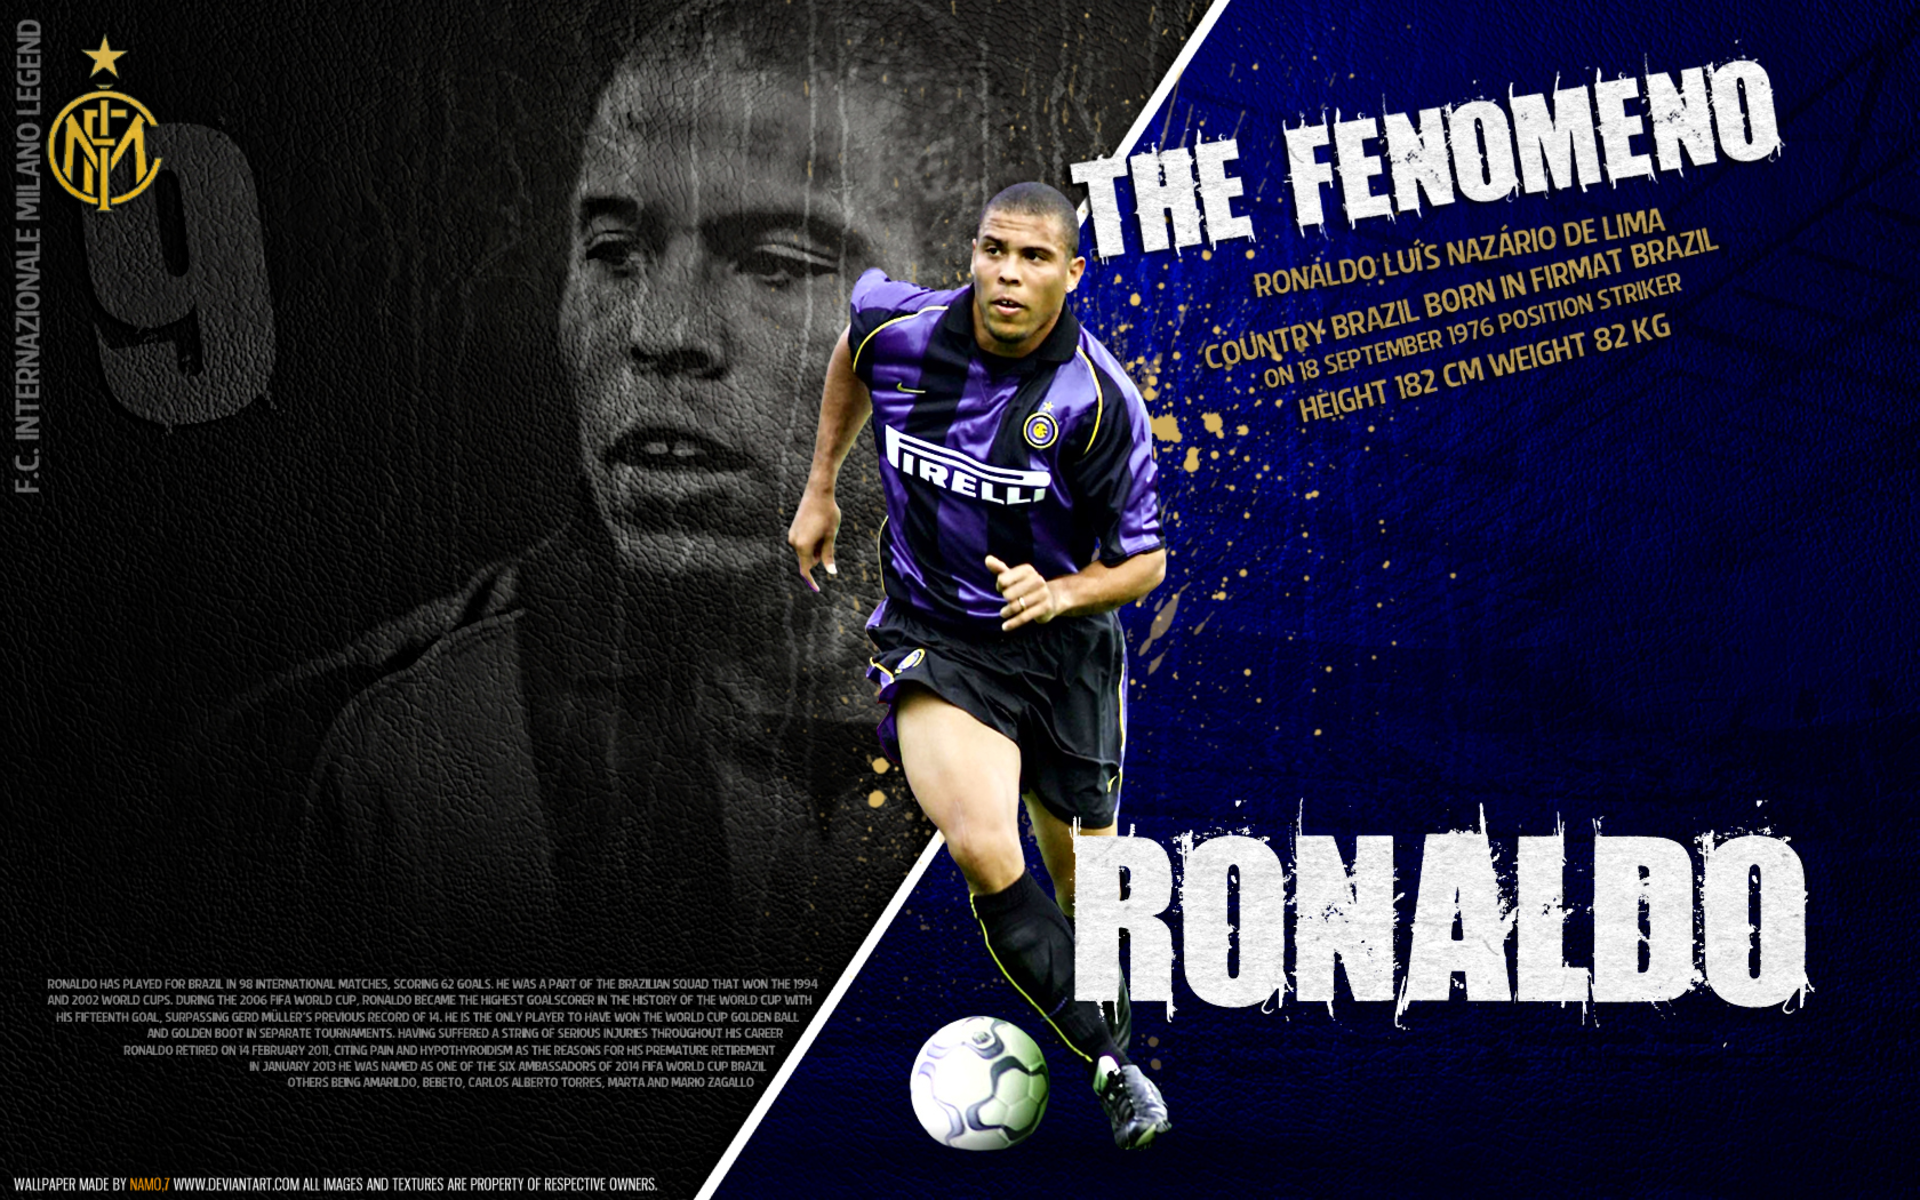 Ronaldo Nazário HD Wallpapers and Backgrounds